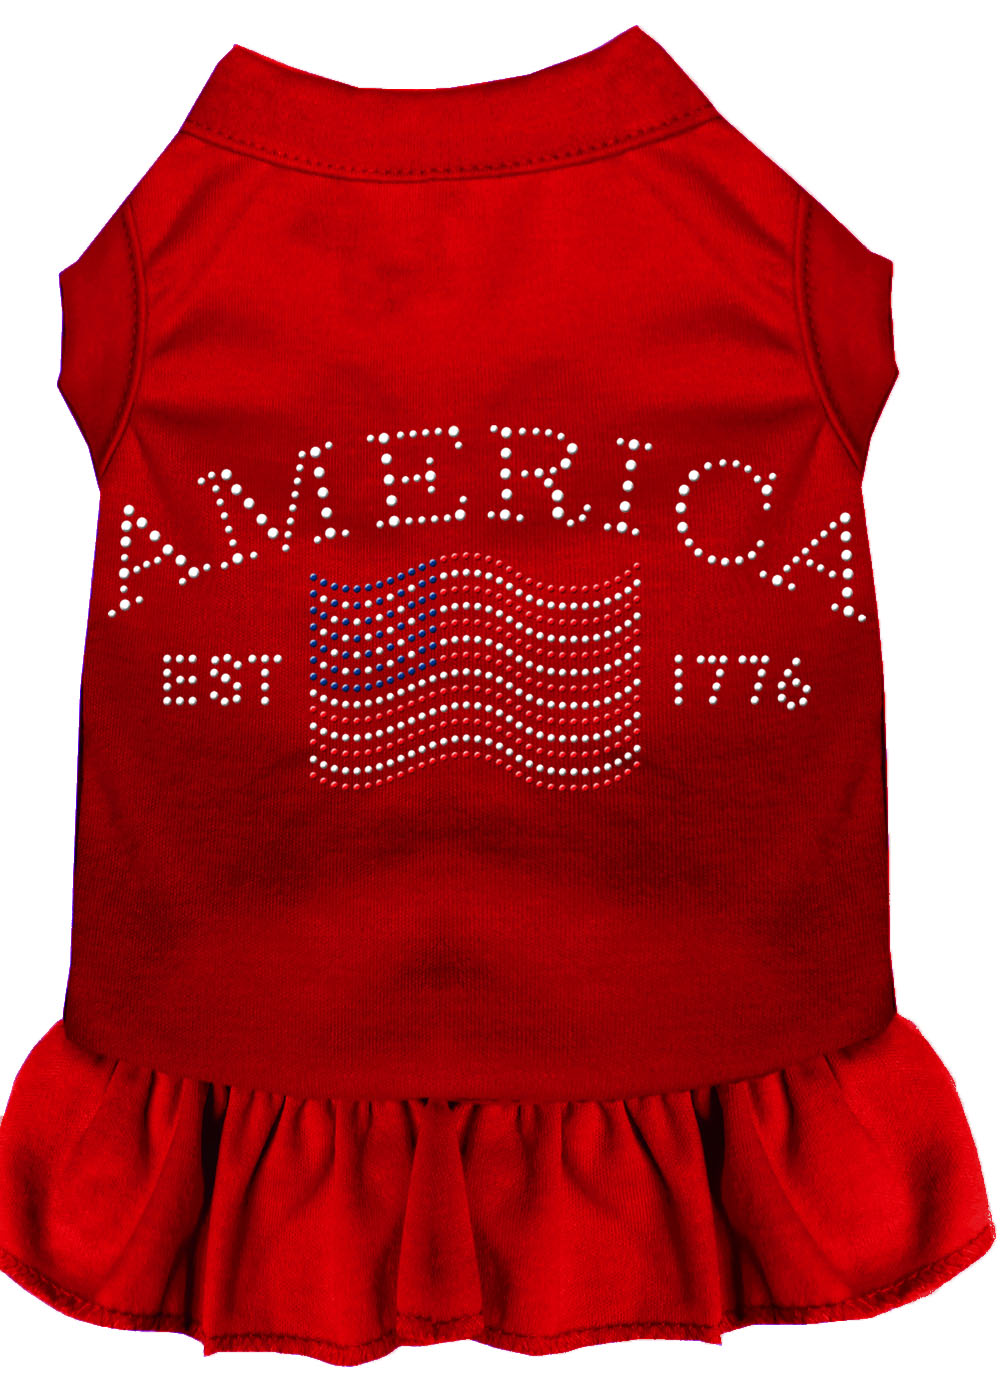 Classic America Rhinestone Dress Red XXXL